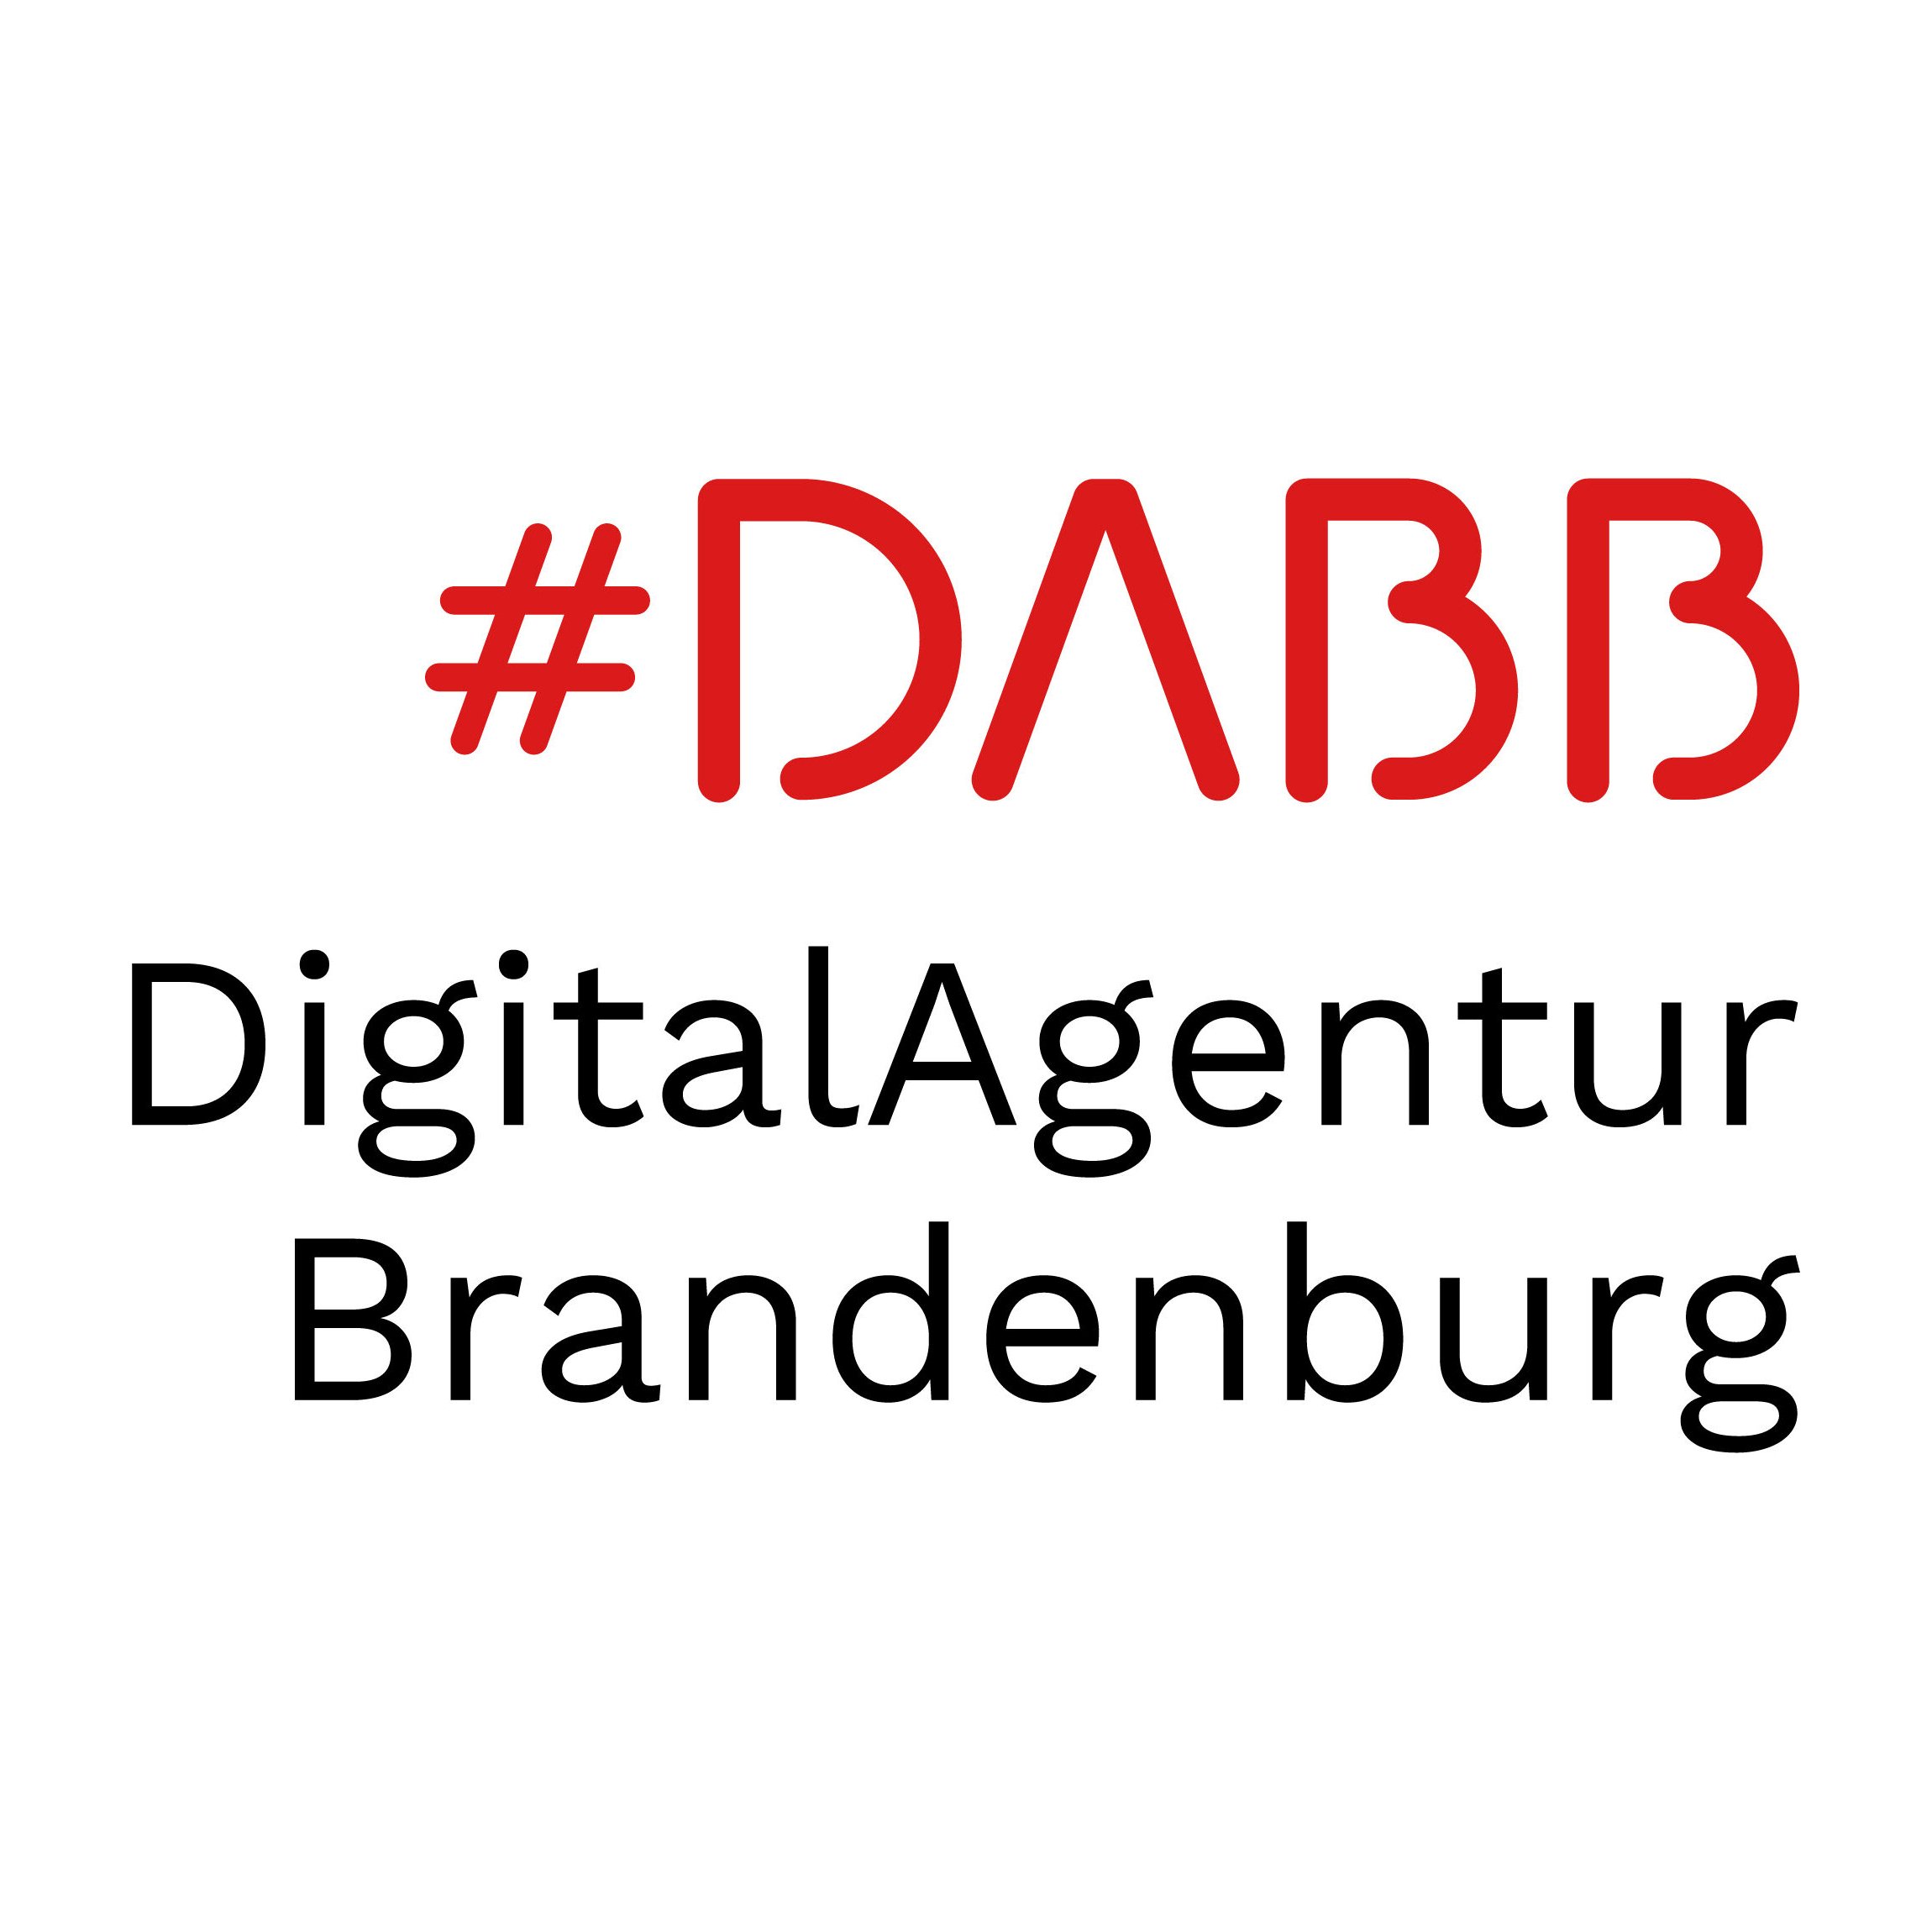 DigitalAgentur Brandenburg